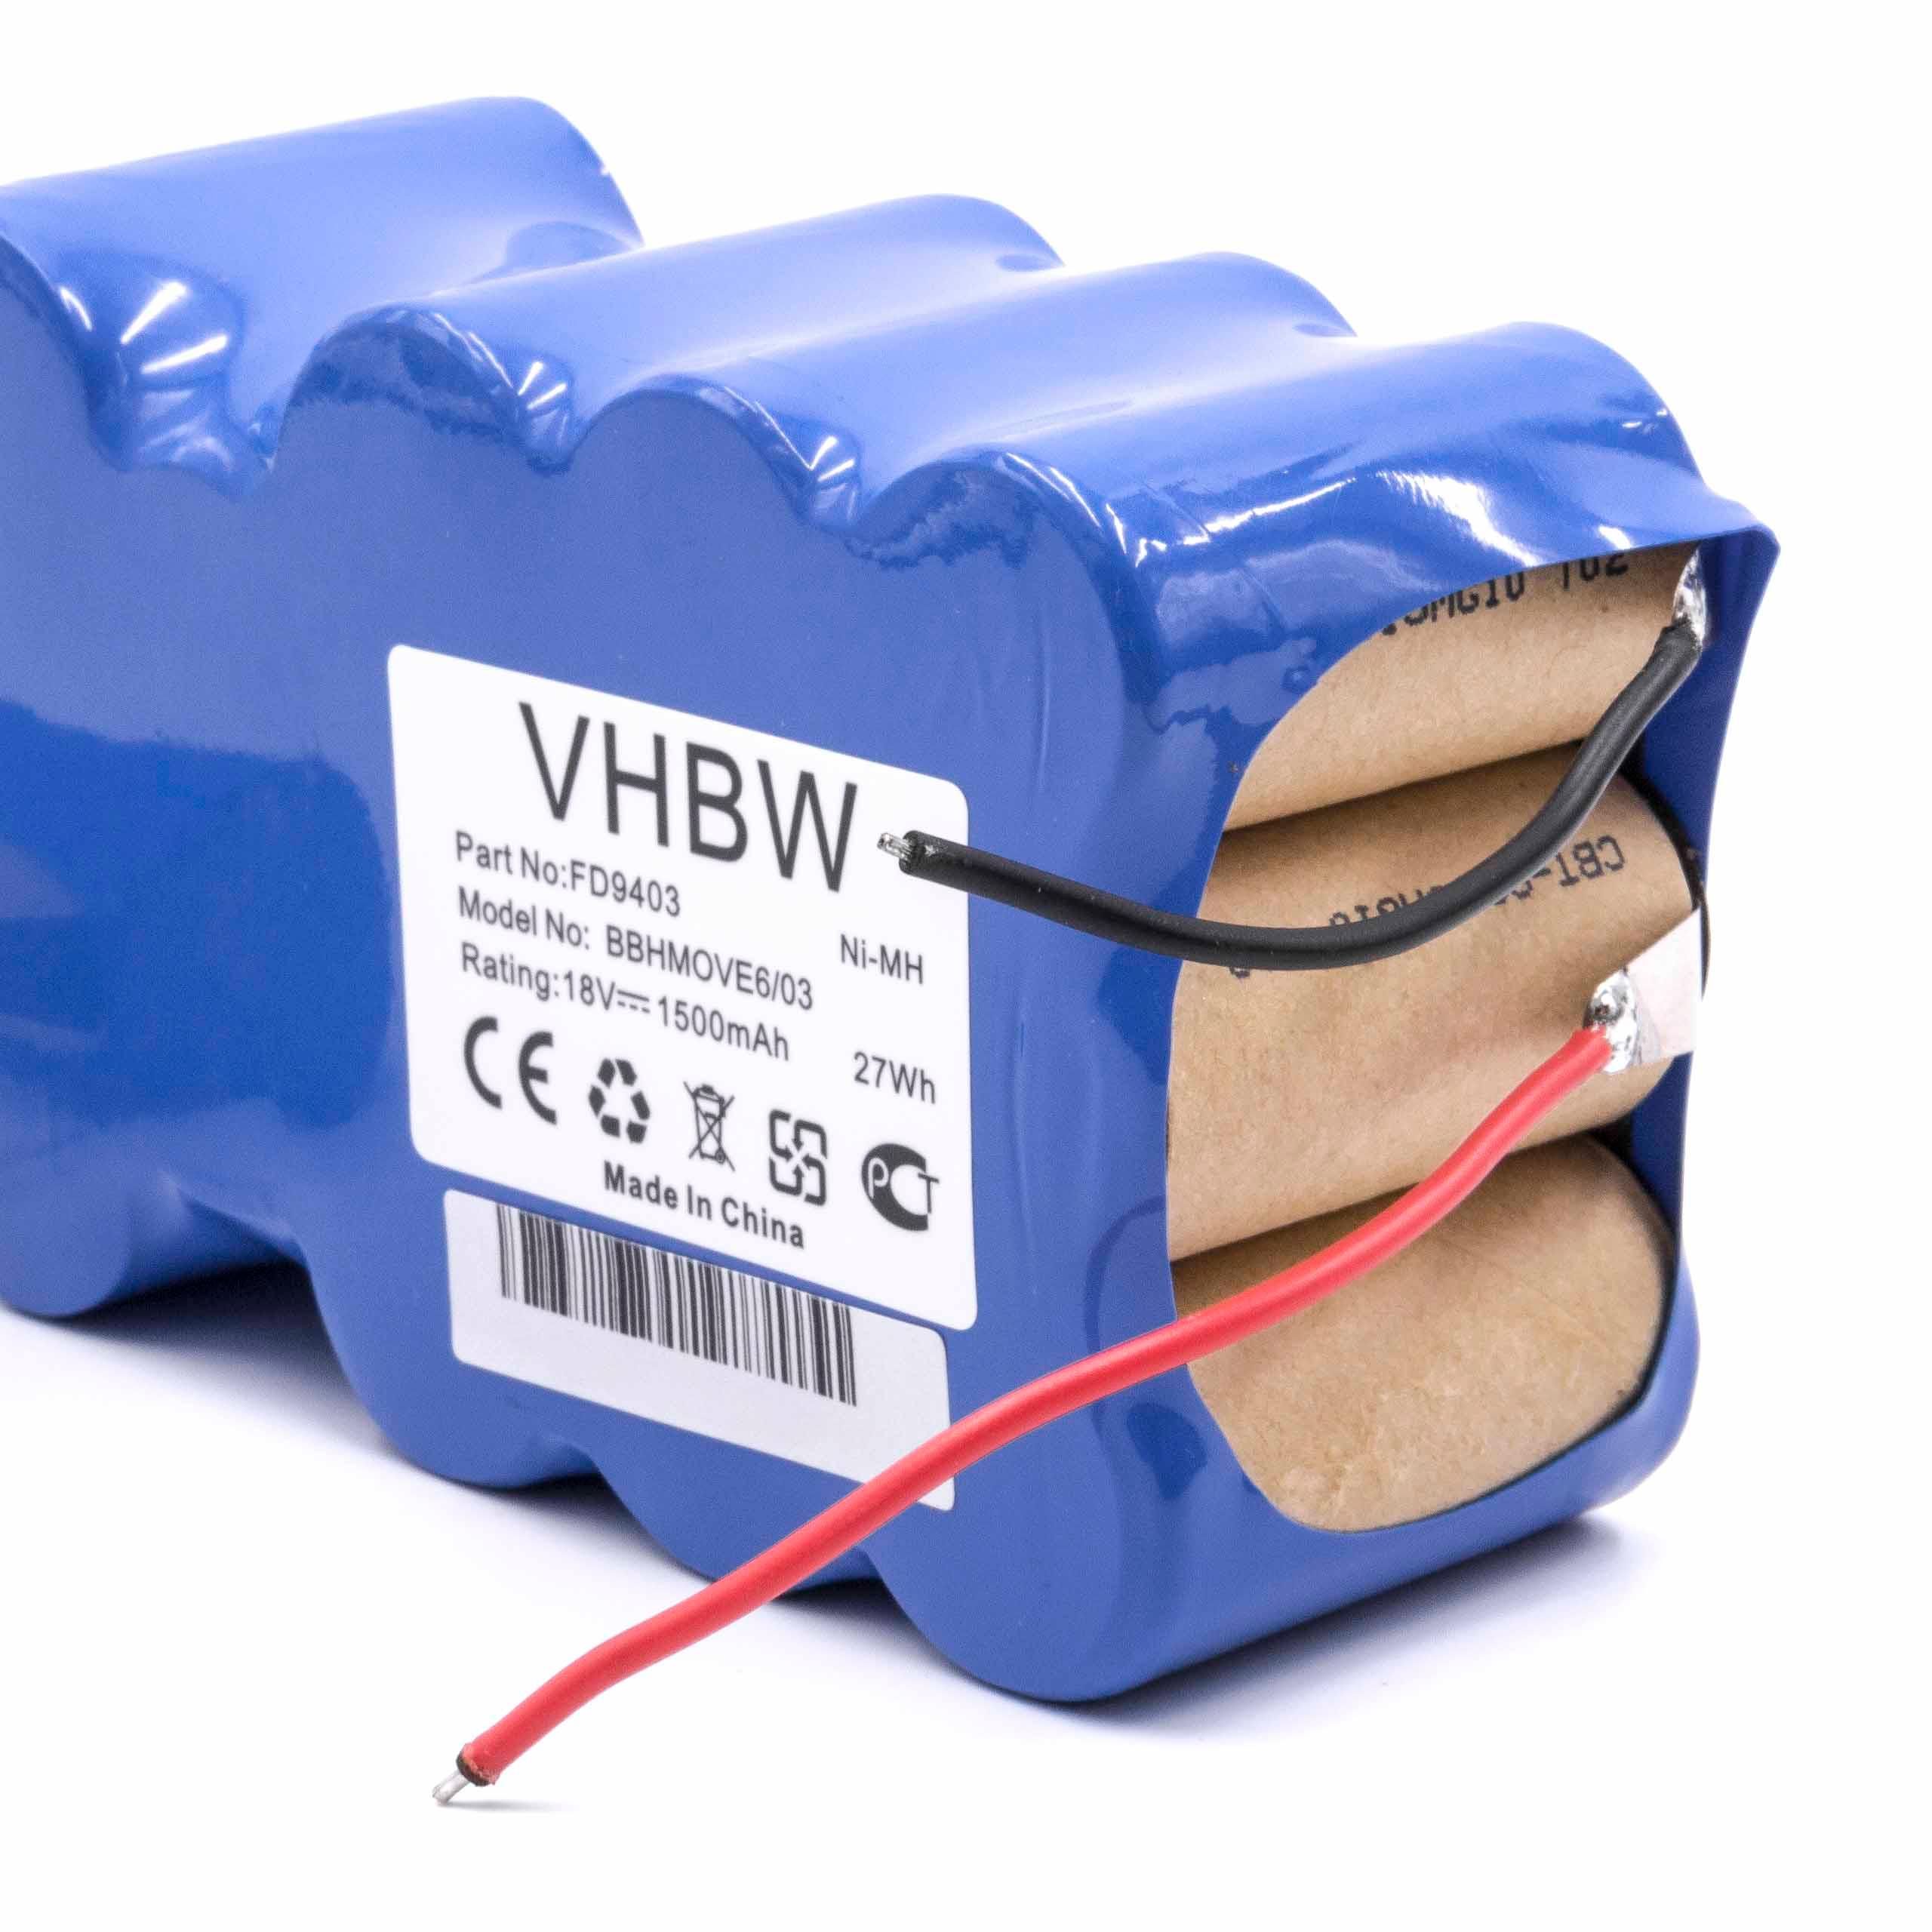 Batterie remplace Bosch 751993, FD9403, 100W + 10W, FD9403 pour aspirateur - 1500mAh 18V NiMH